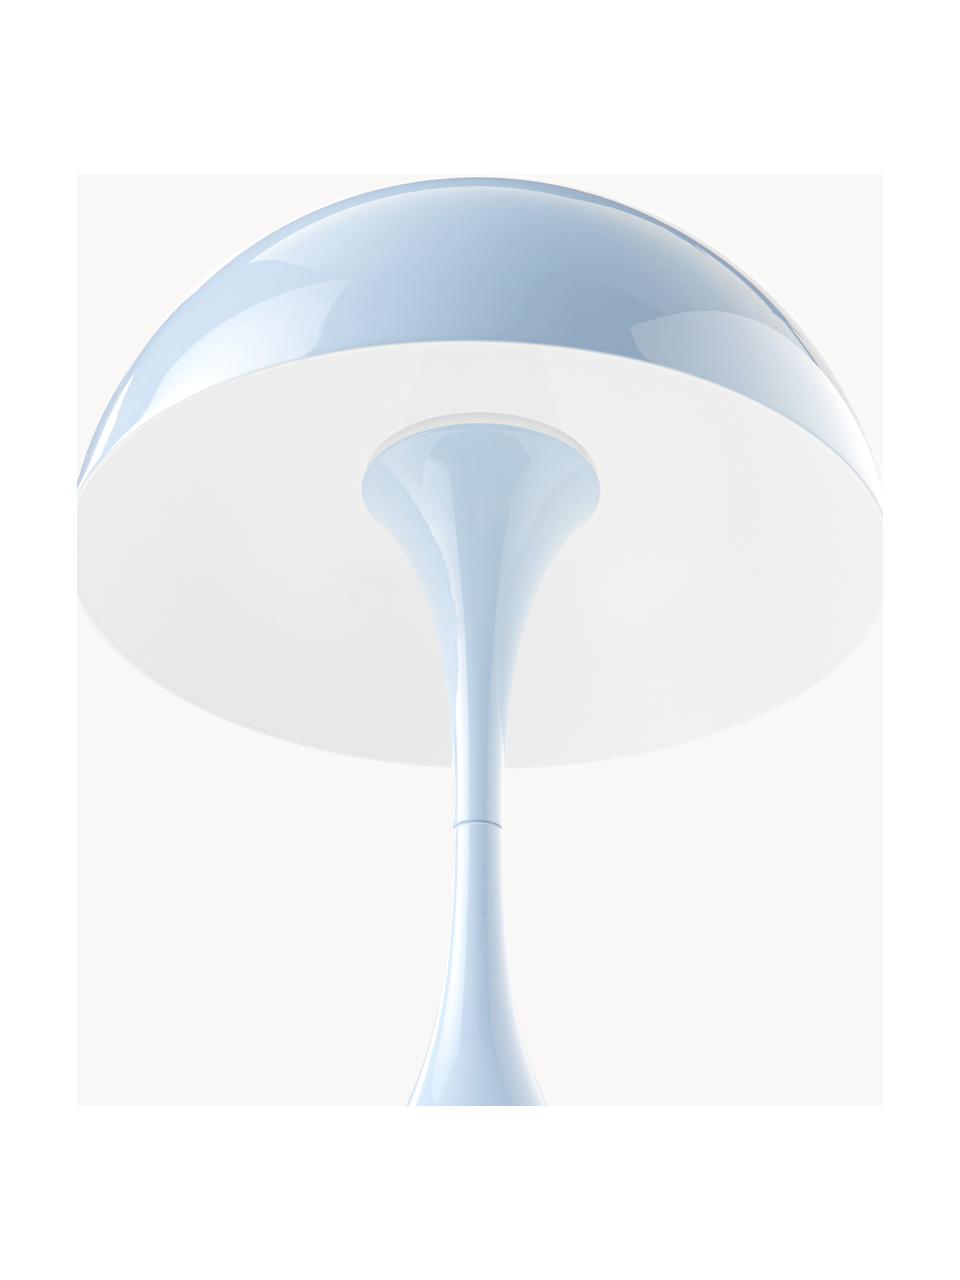 Mobilna lampa stołowa LED z funkcją przyciemniania Panthella, W 24 cm, Stelaż: aluminium powlekane, Jasnoniebieska stal, Ø 16 x 24 cm